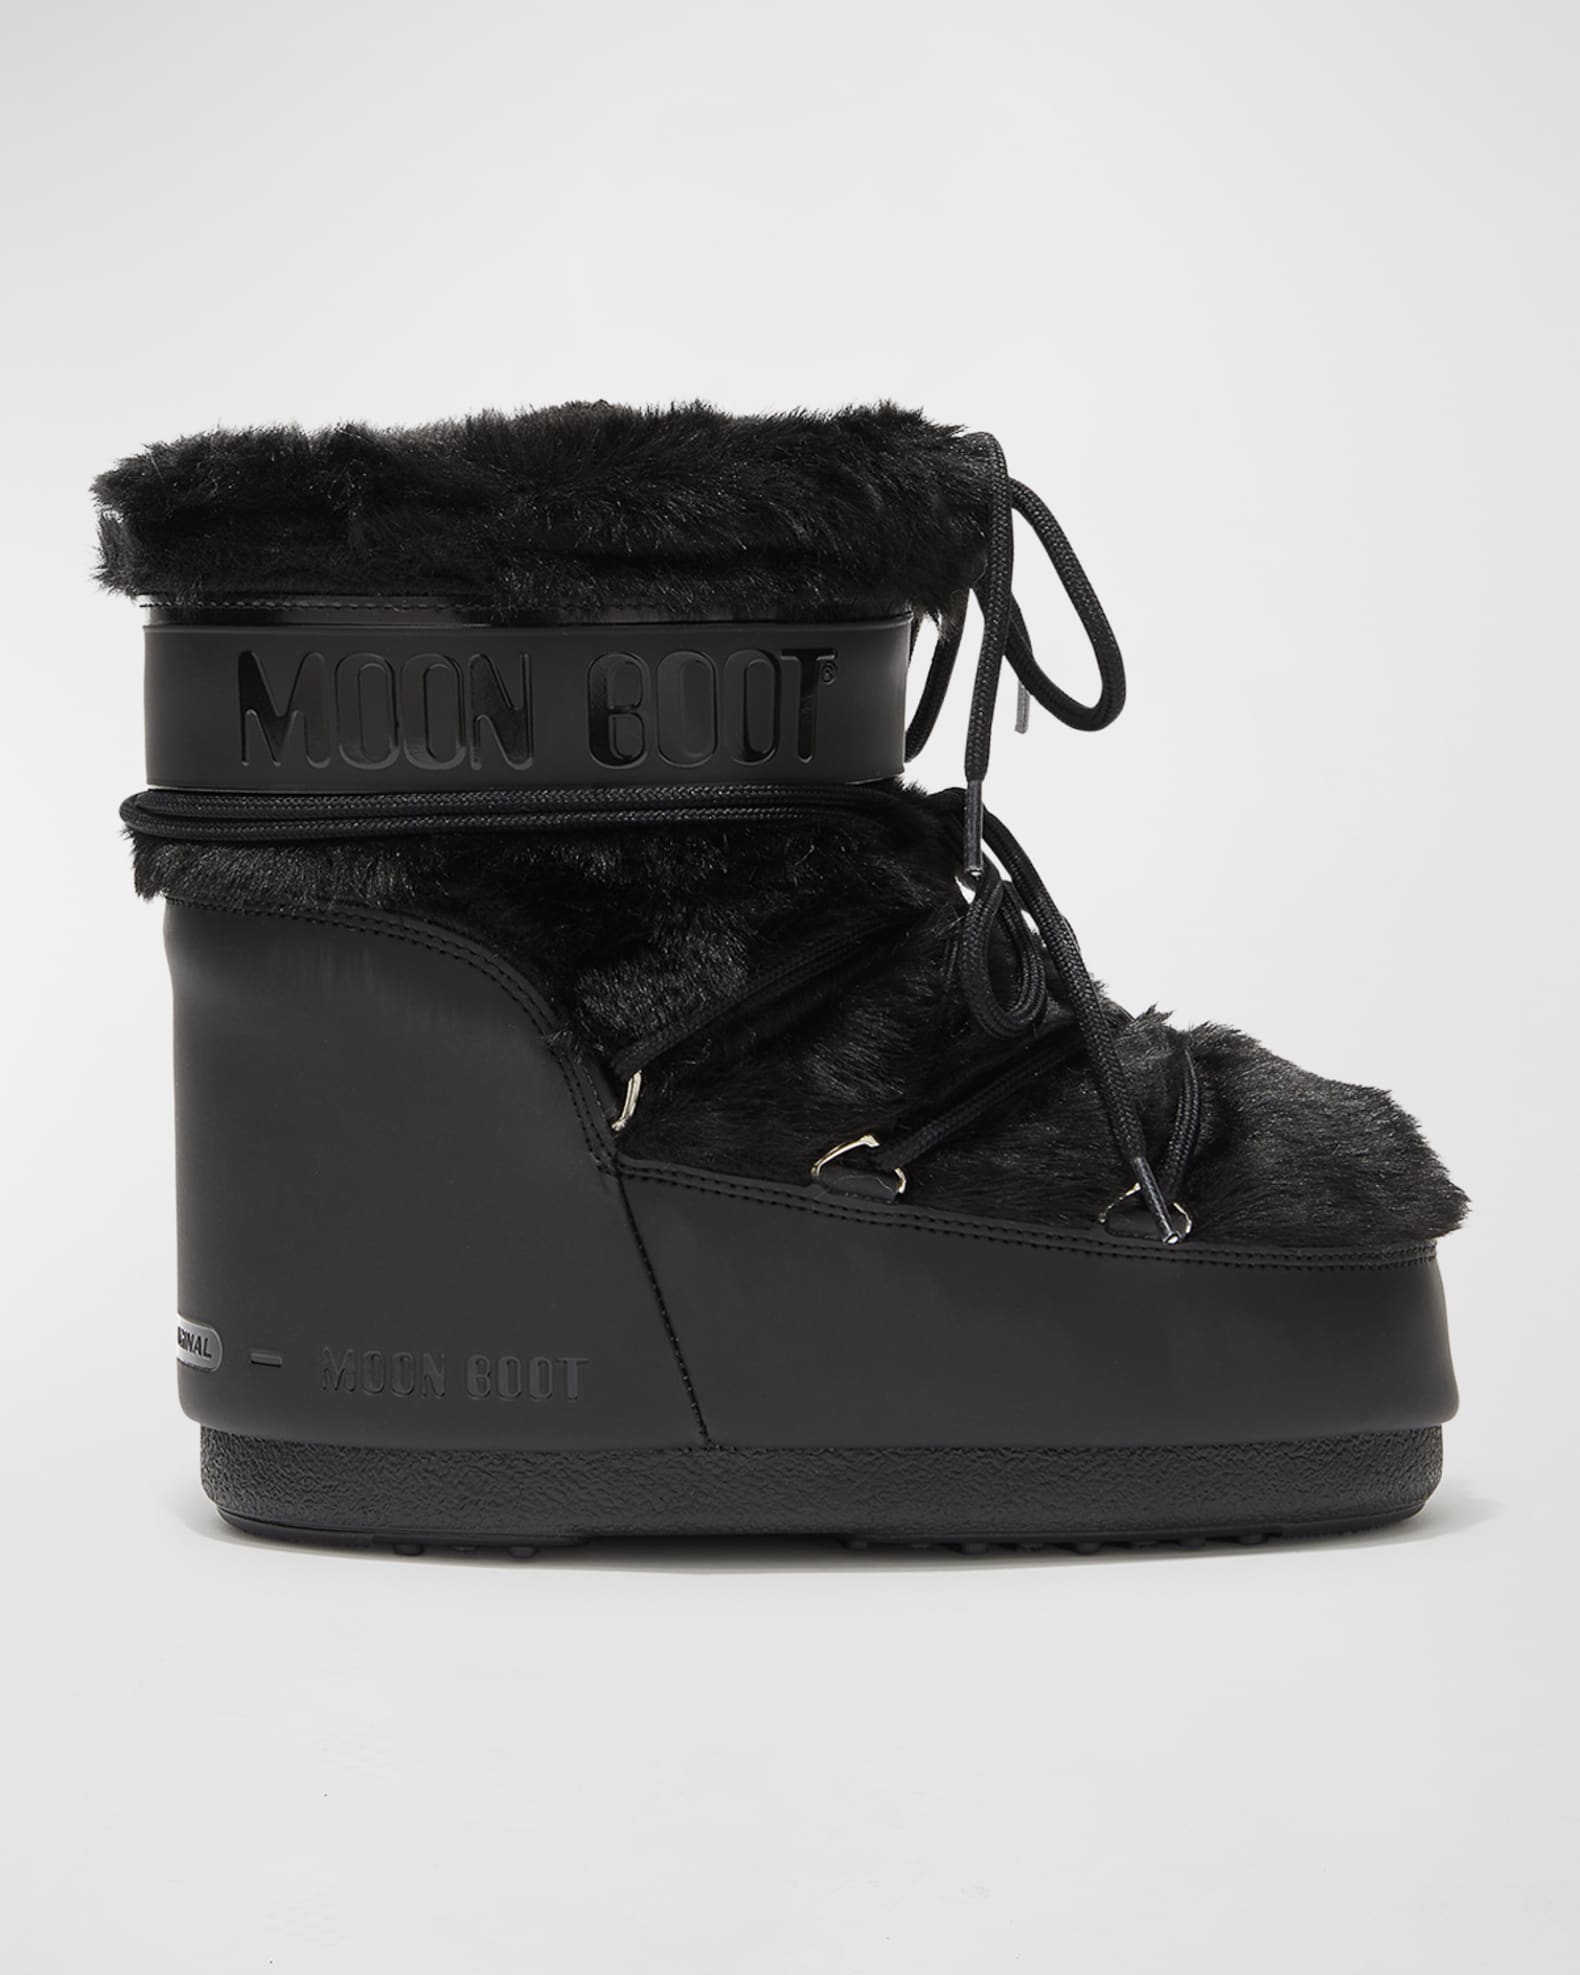 LOUIS VUITTON Women's Moon boots with fur trim Size: EU 36,5